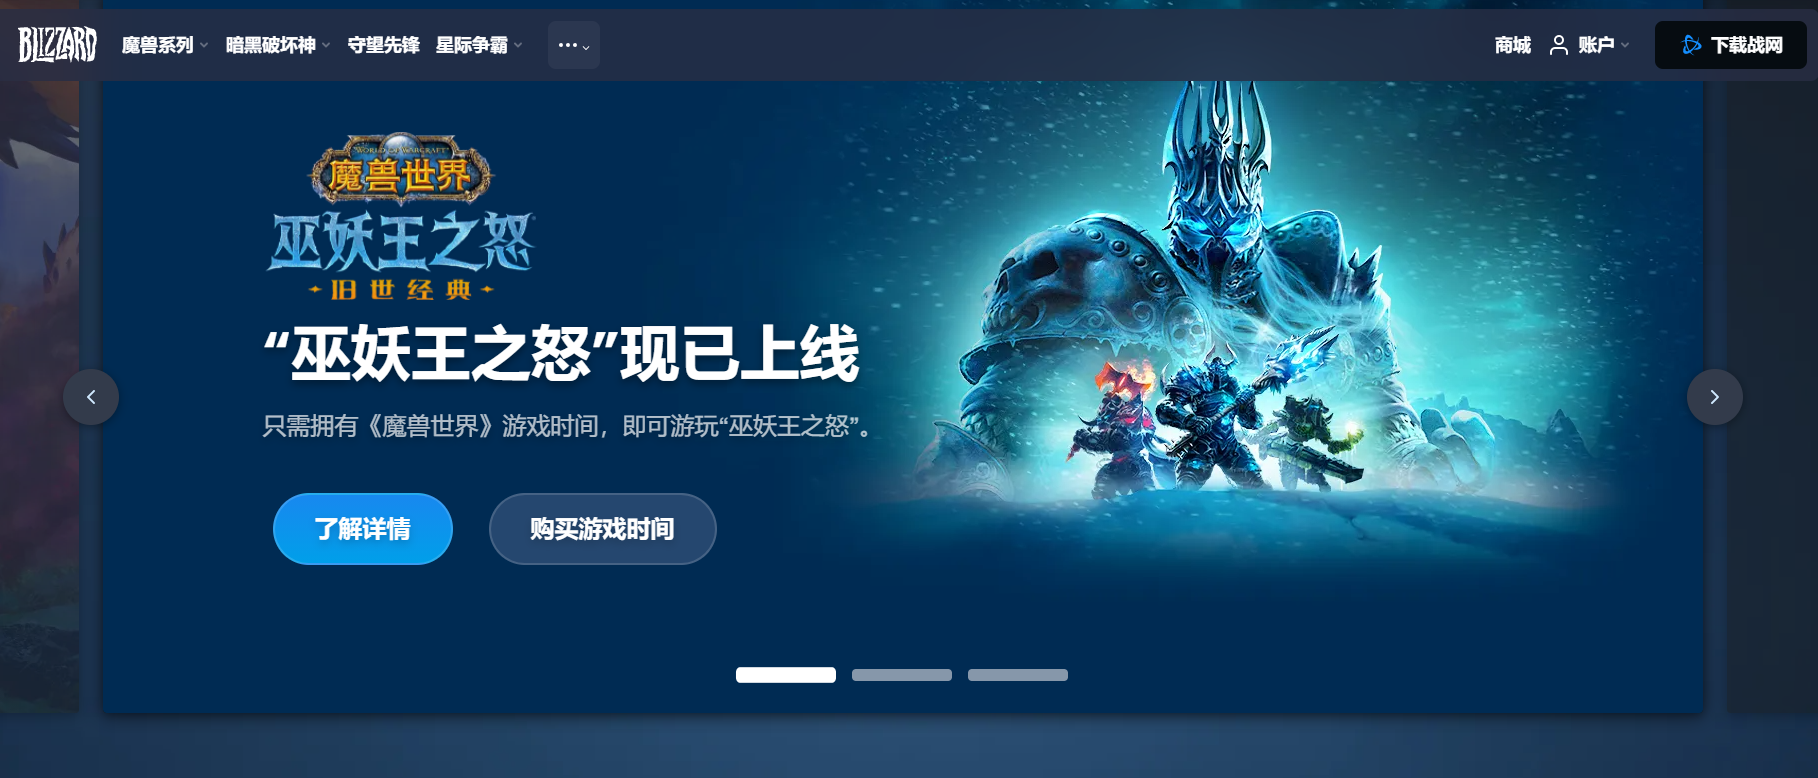 暴雪娱乐与网易的游戏协议将到期，将暂停中国大陆的大部分暴雪游戏服